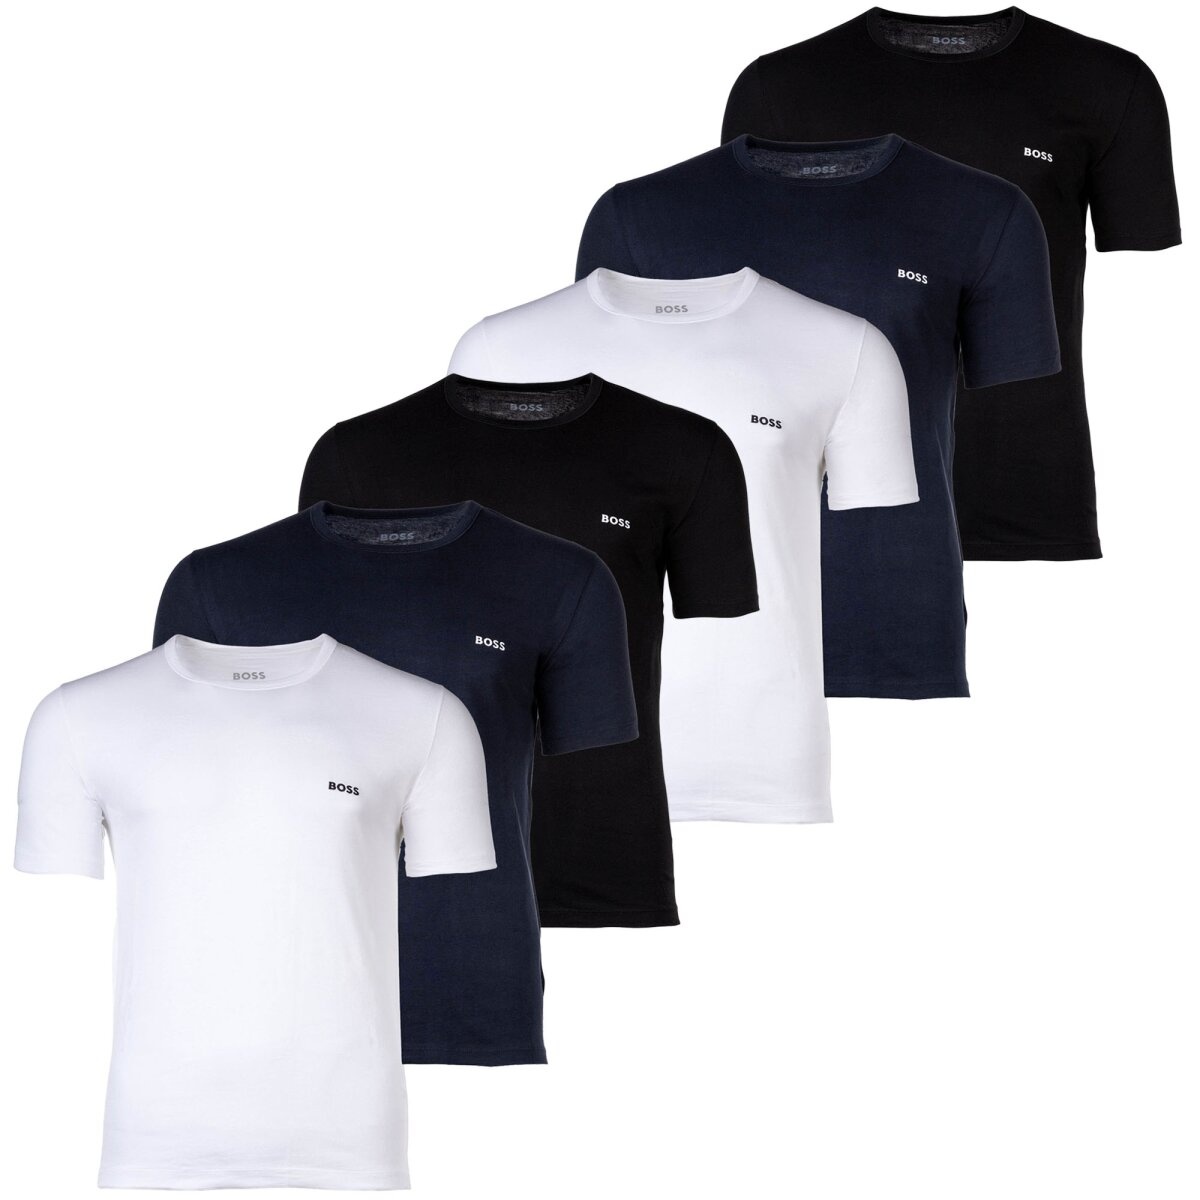 BOSS Herren T-Shirt, 6er Pack - RN 6P Classic, Rundhals, Kurzarm, Cotton, uni Schwarz/Blau/Weiß M